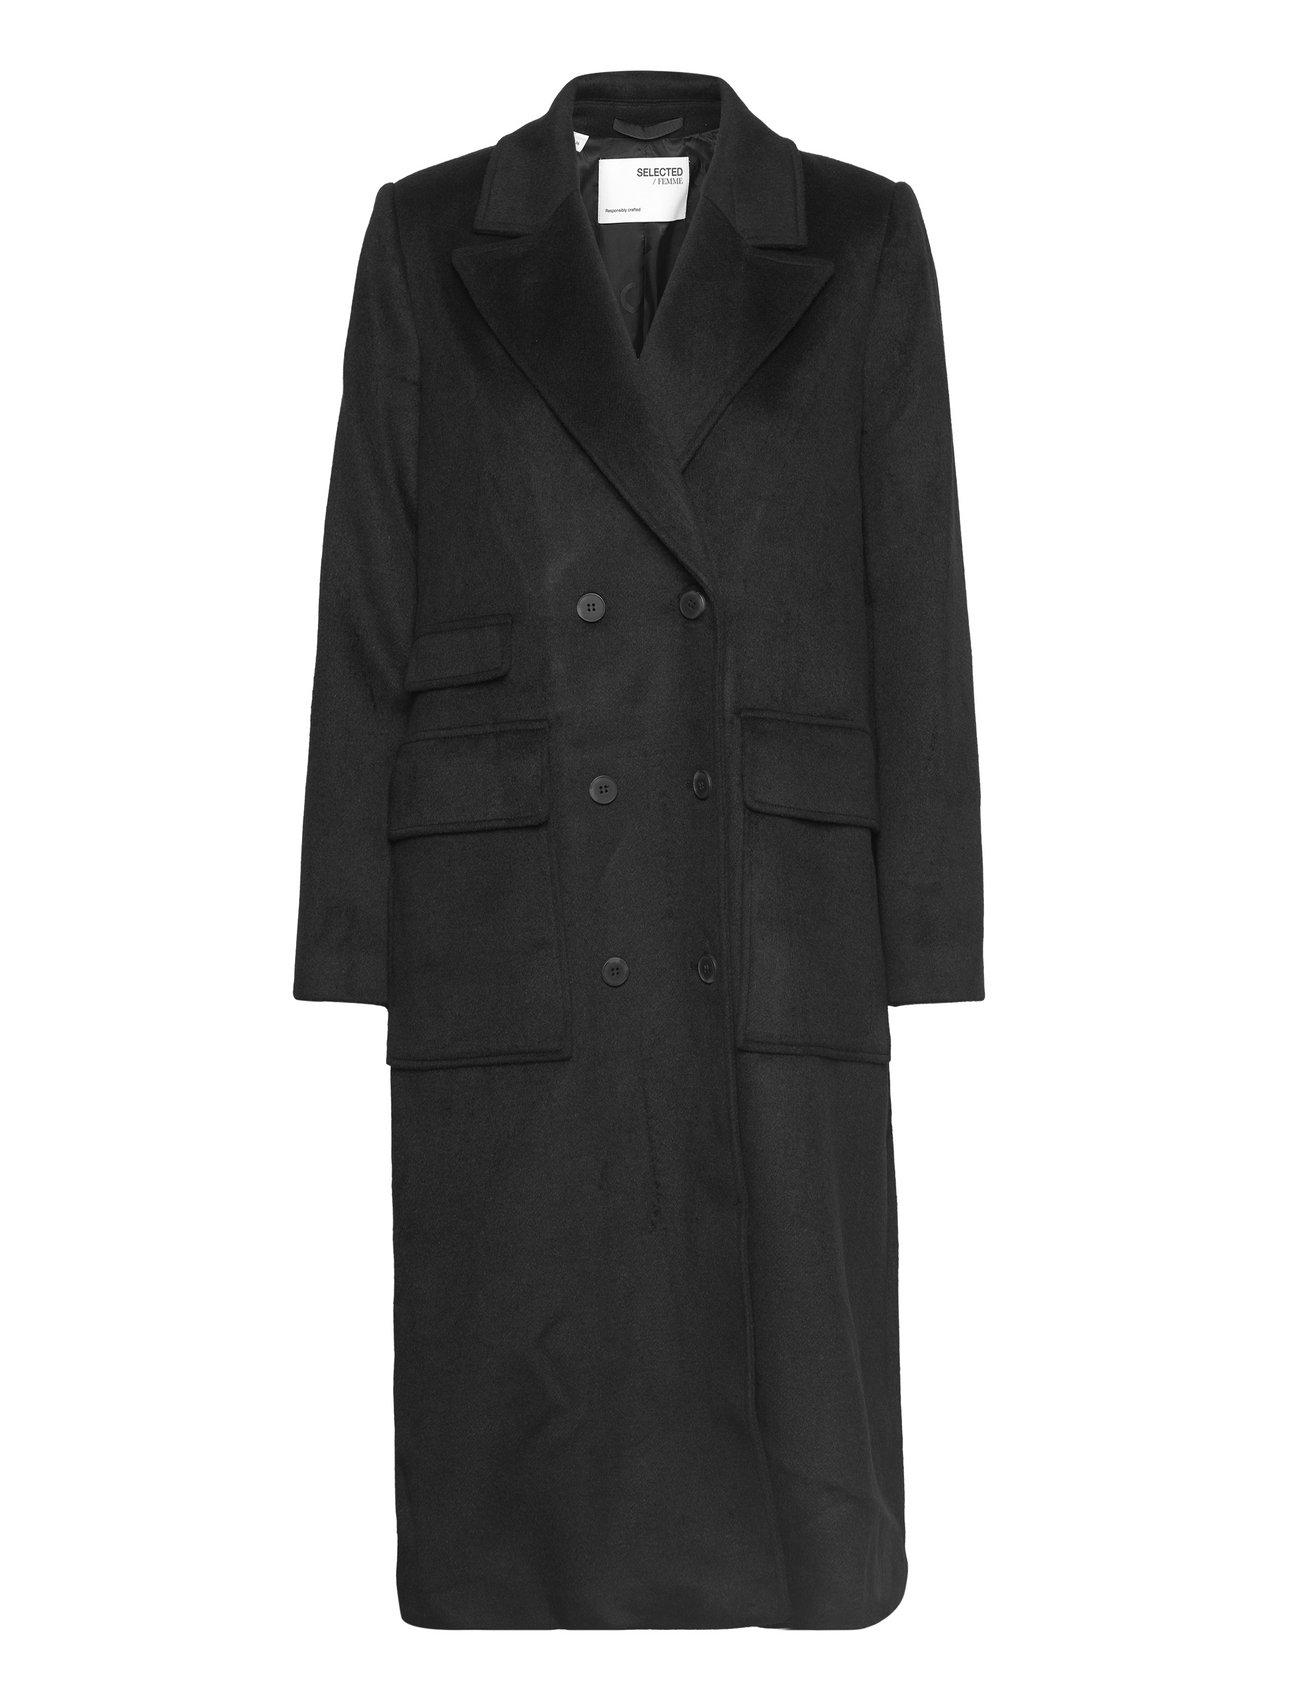 Selected Femme Wool Coat B - 828 kr. Køb Vinterfrakker fra Femme online på Boozt.com. Hurtig levering & nem retur